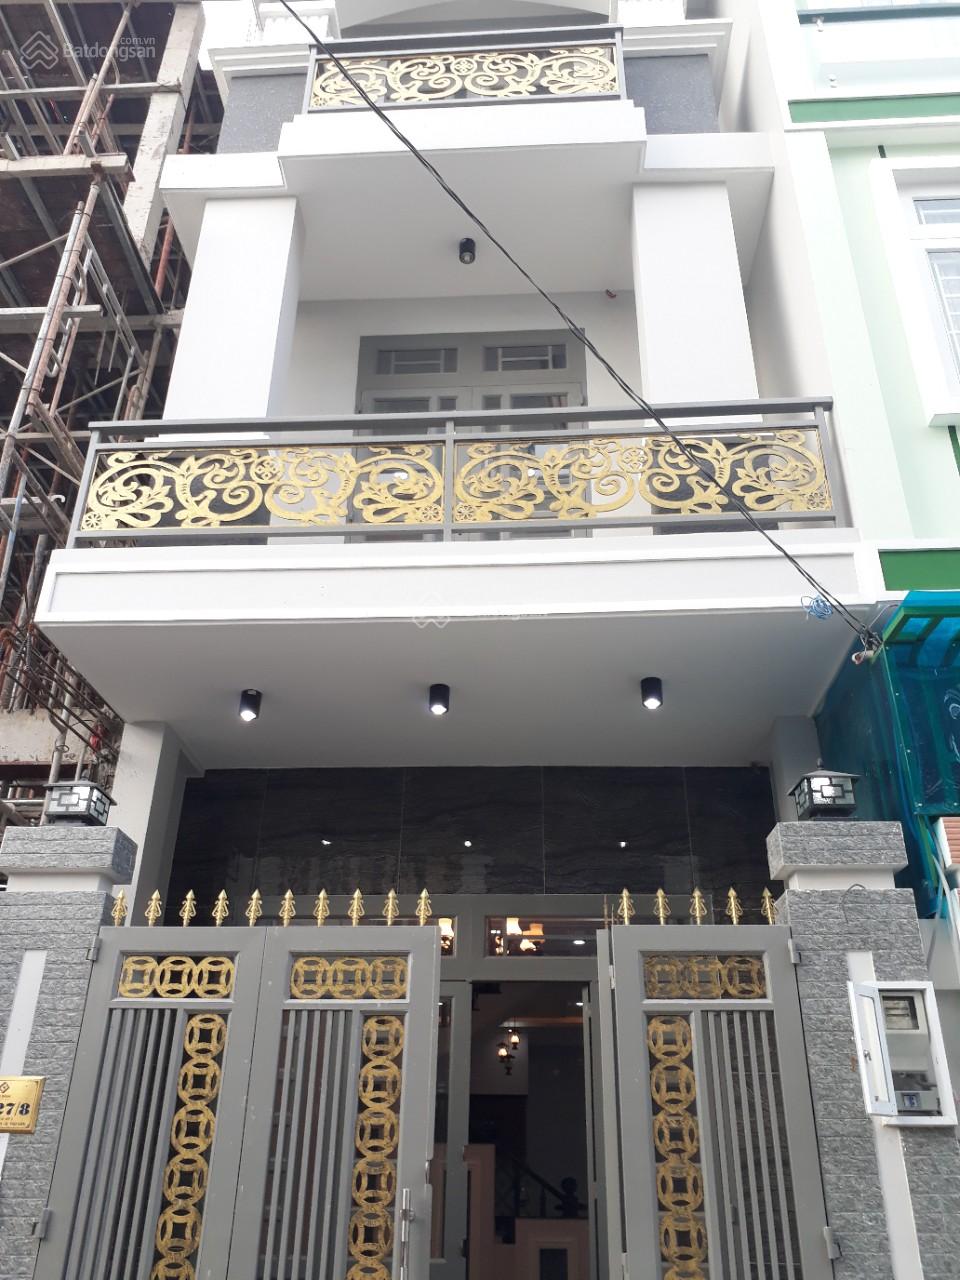 Bán nhà đường Nguyễn Gia Trí, Bình Thạnh (D2 cũ) giá 5,885 tỷ LH :0931.88.98.78 xem nhà